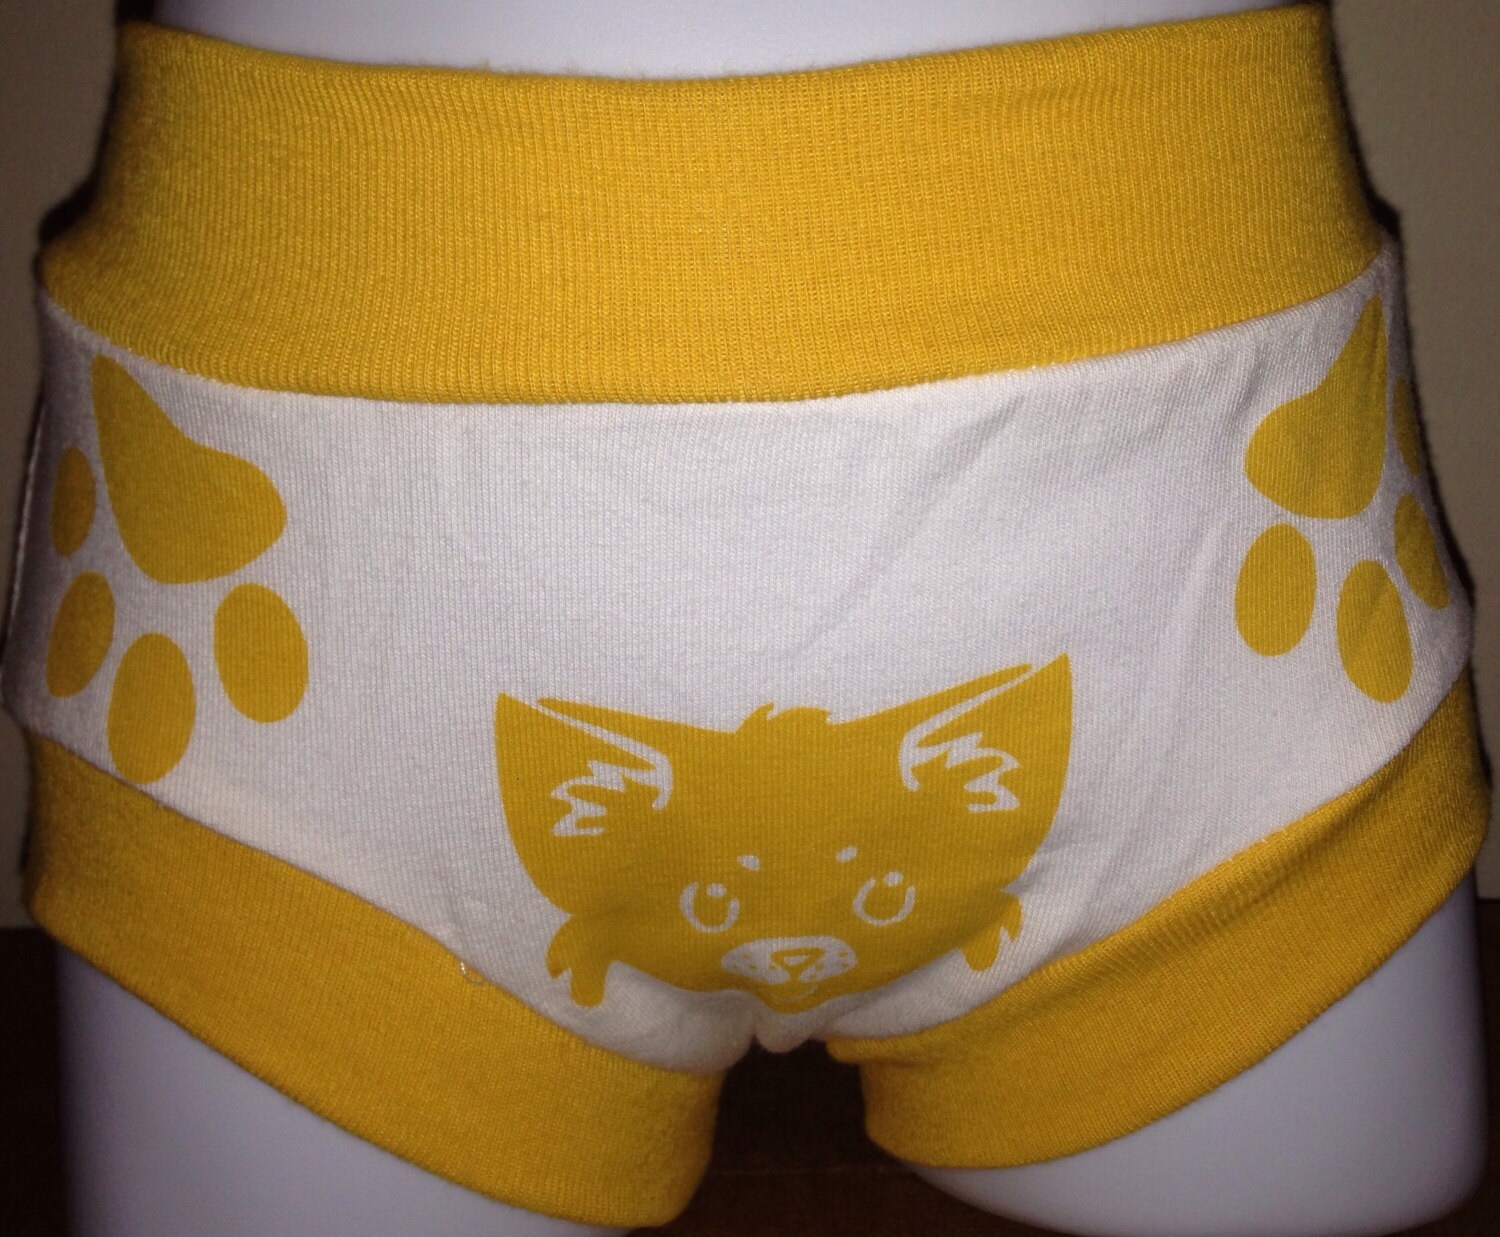 Toddler Training Pink Cat Underwear/ Unisex Comfy Cotton Underwear